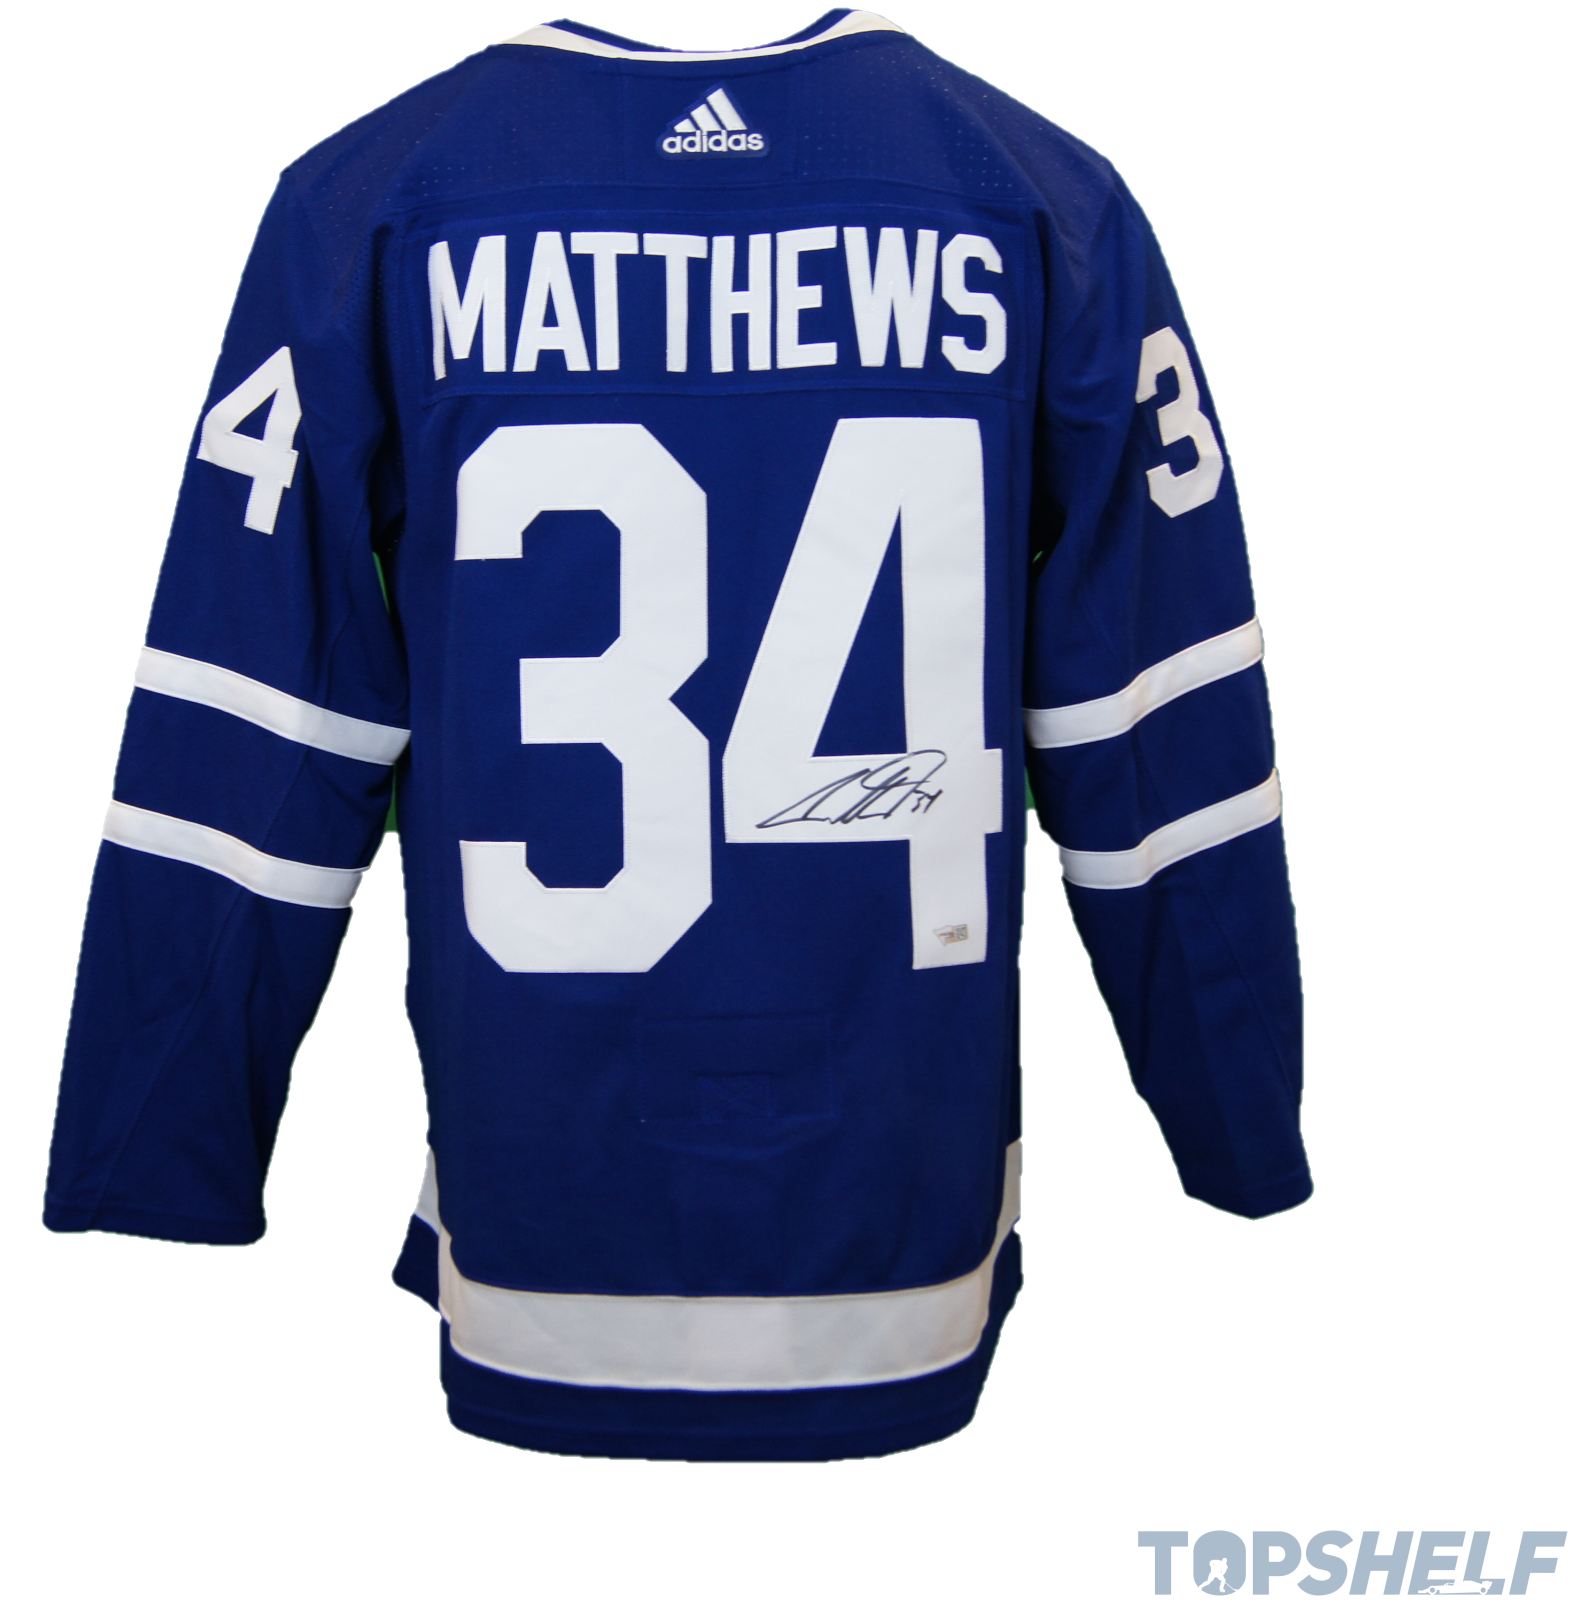 Toronto Maple Leafs adidas Auston Matthews Authentic Jersey